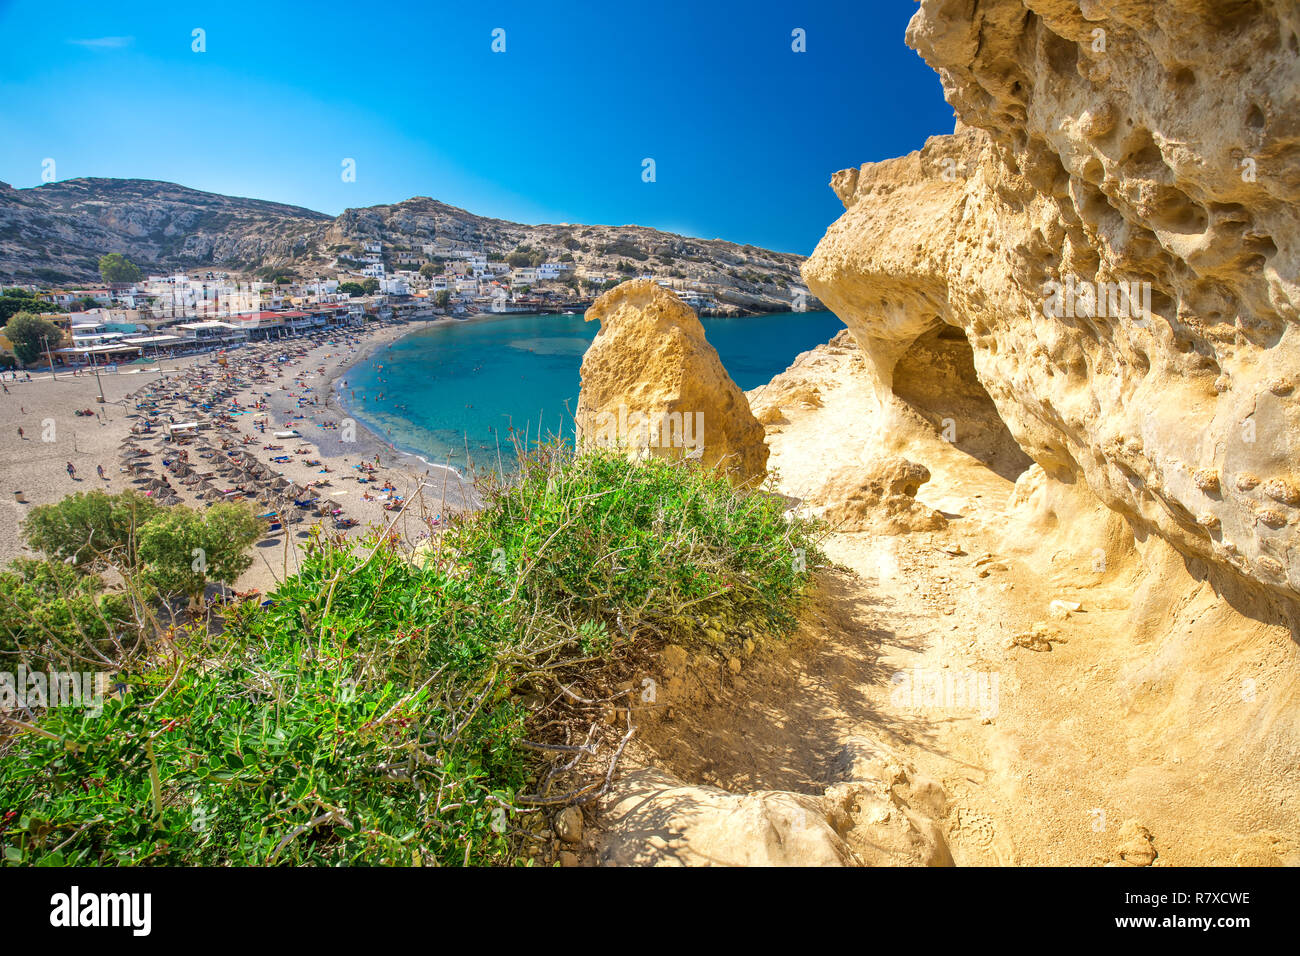 Strand von Matala auf Kreta mit azurblauen Wasser, Griechenland, Europa. Kreta ist die größte und bevölkerungsreichste der griechischen Inseln. Stockfoto